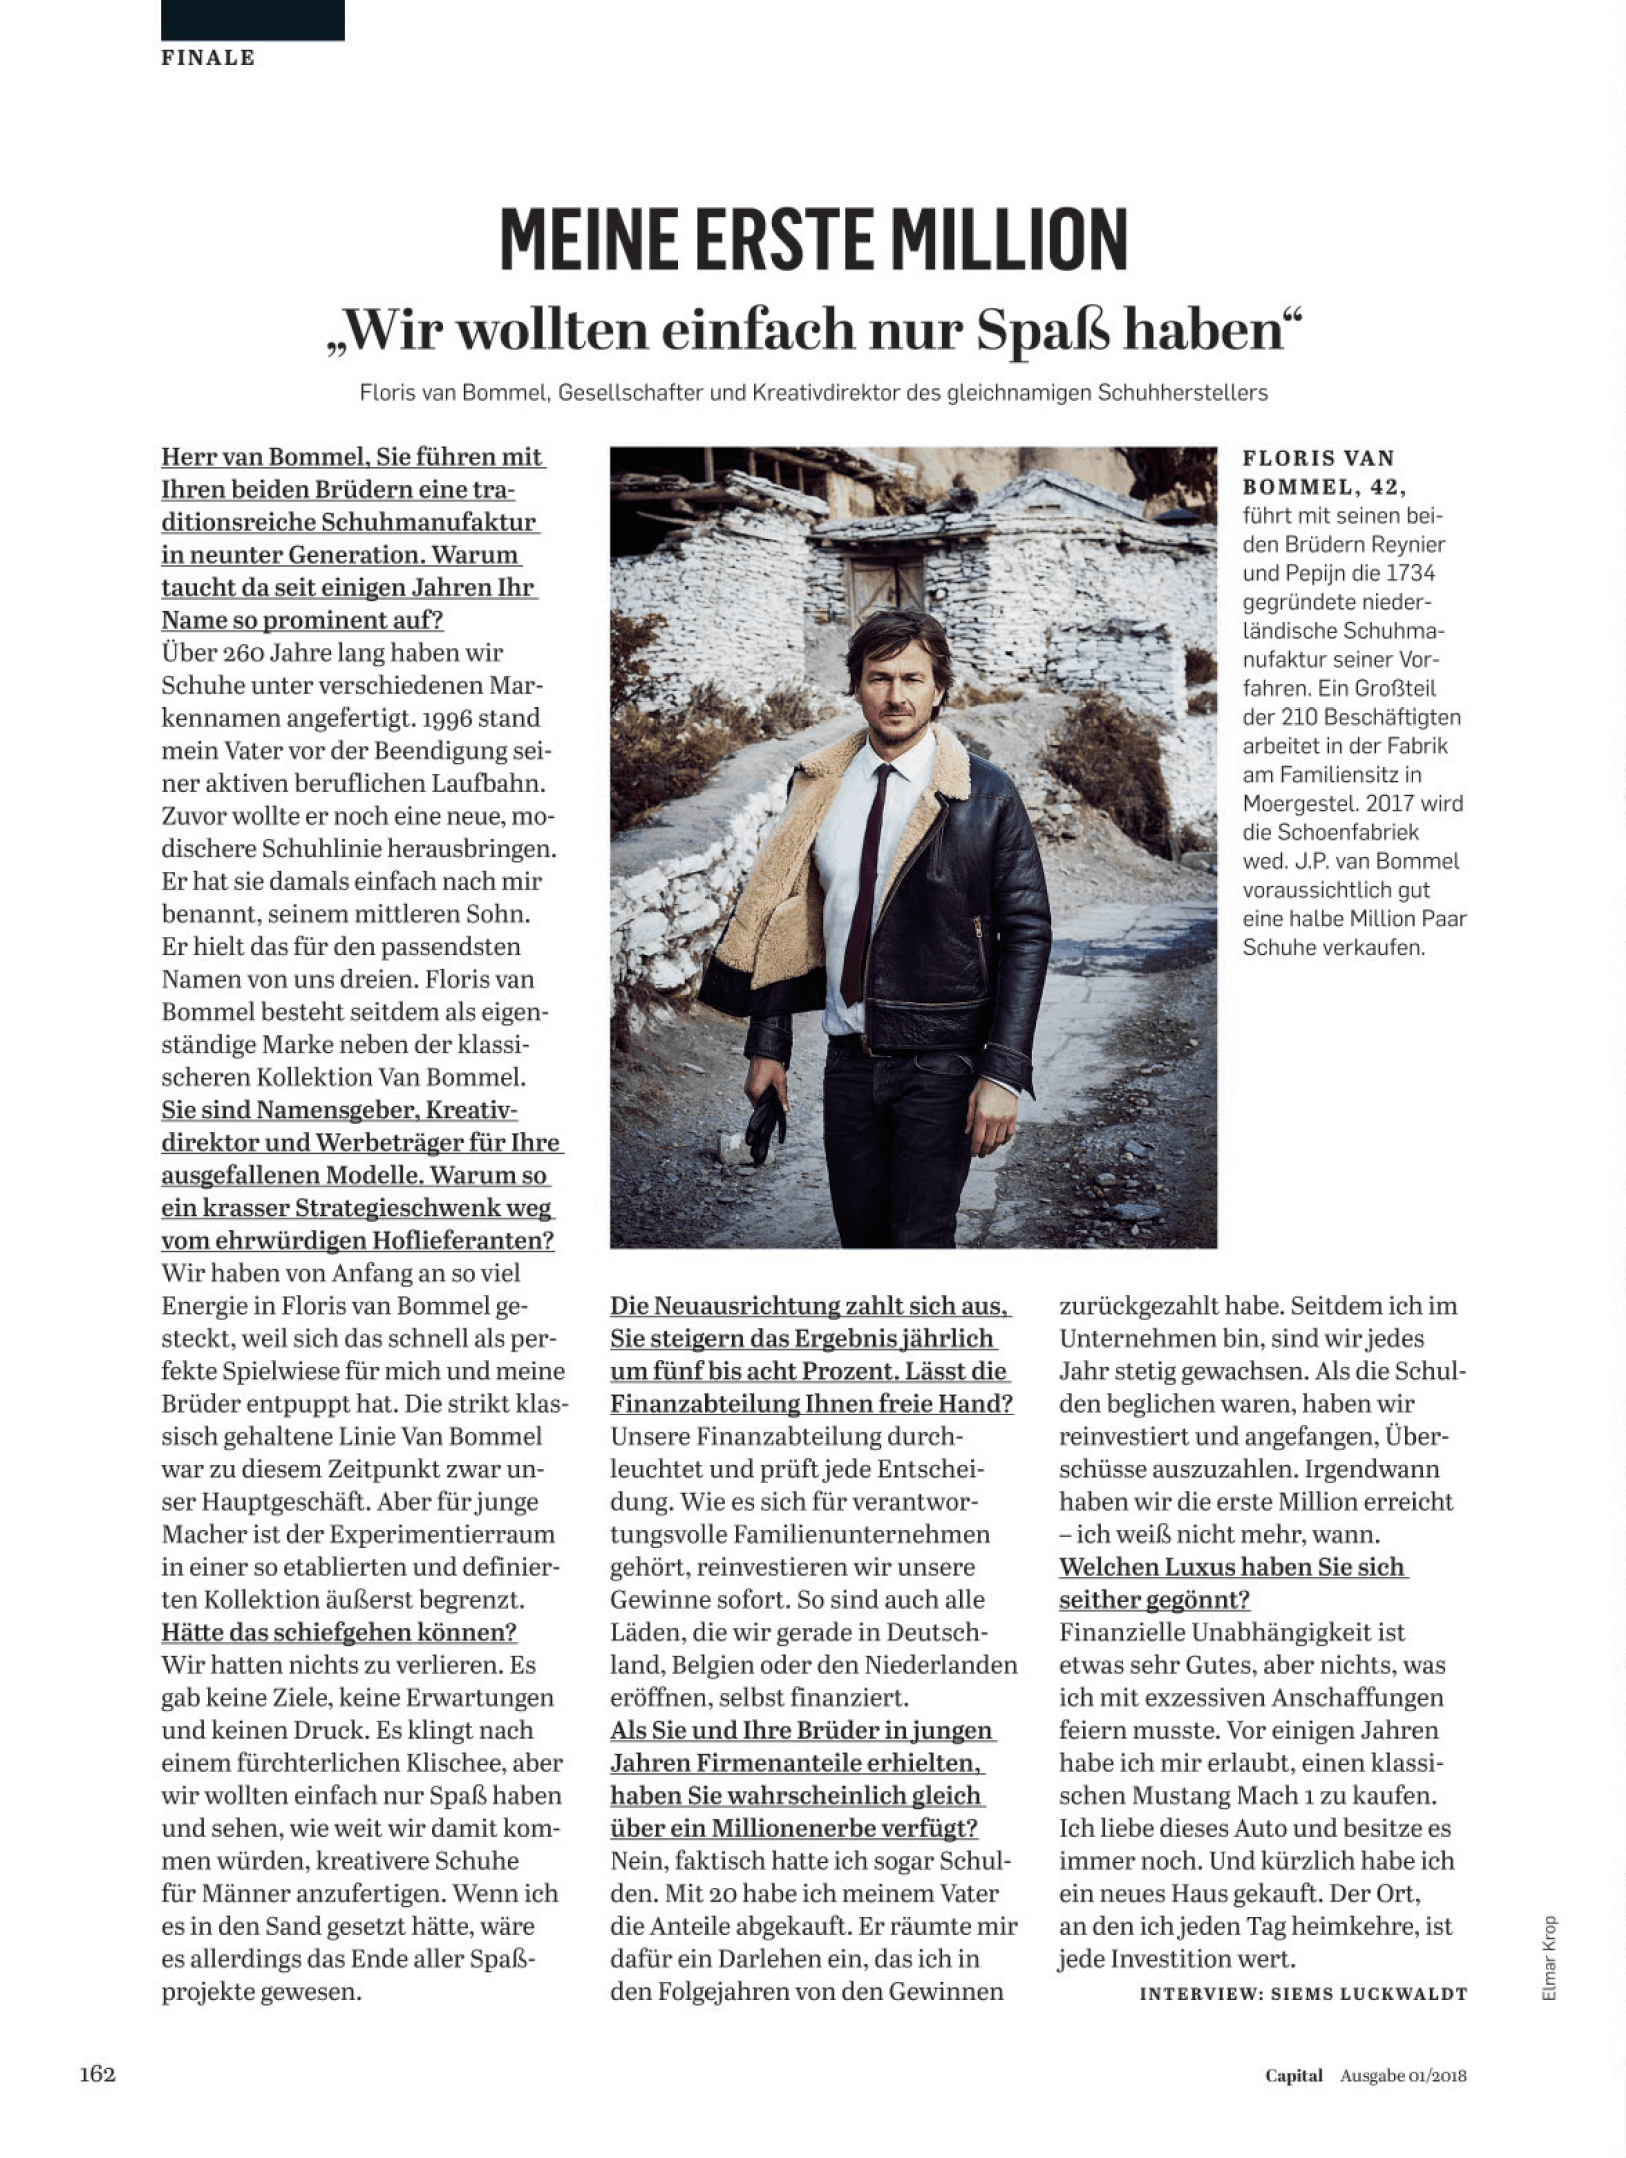 Interview: Floris van Bommel über seine erste Million (für Capital)